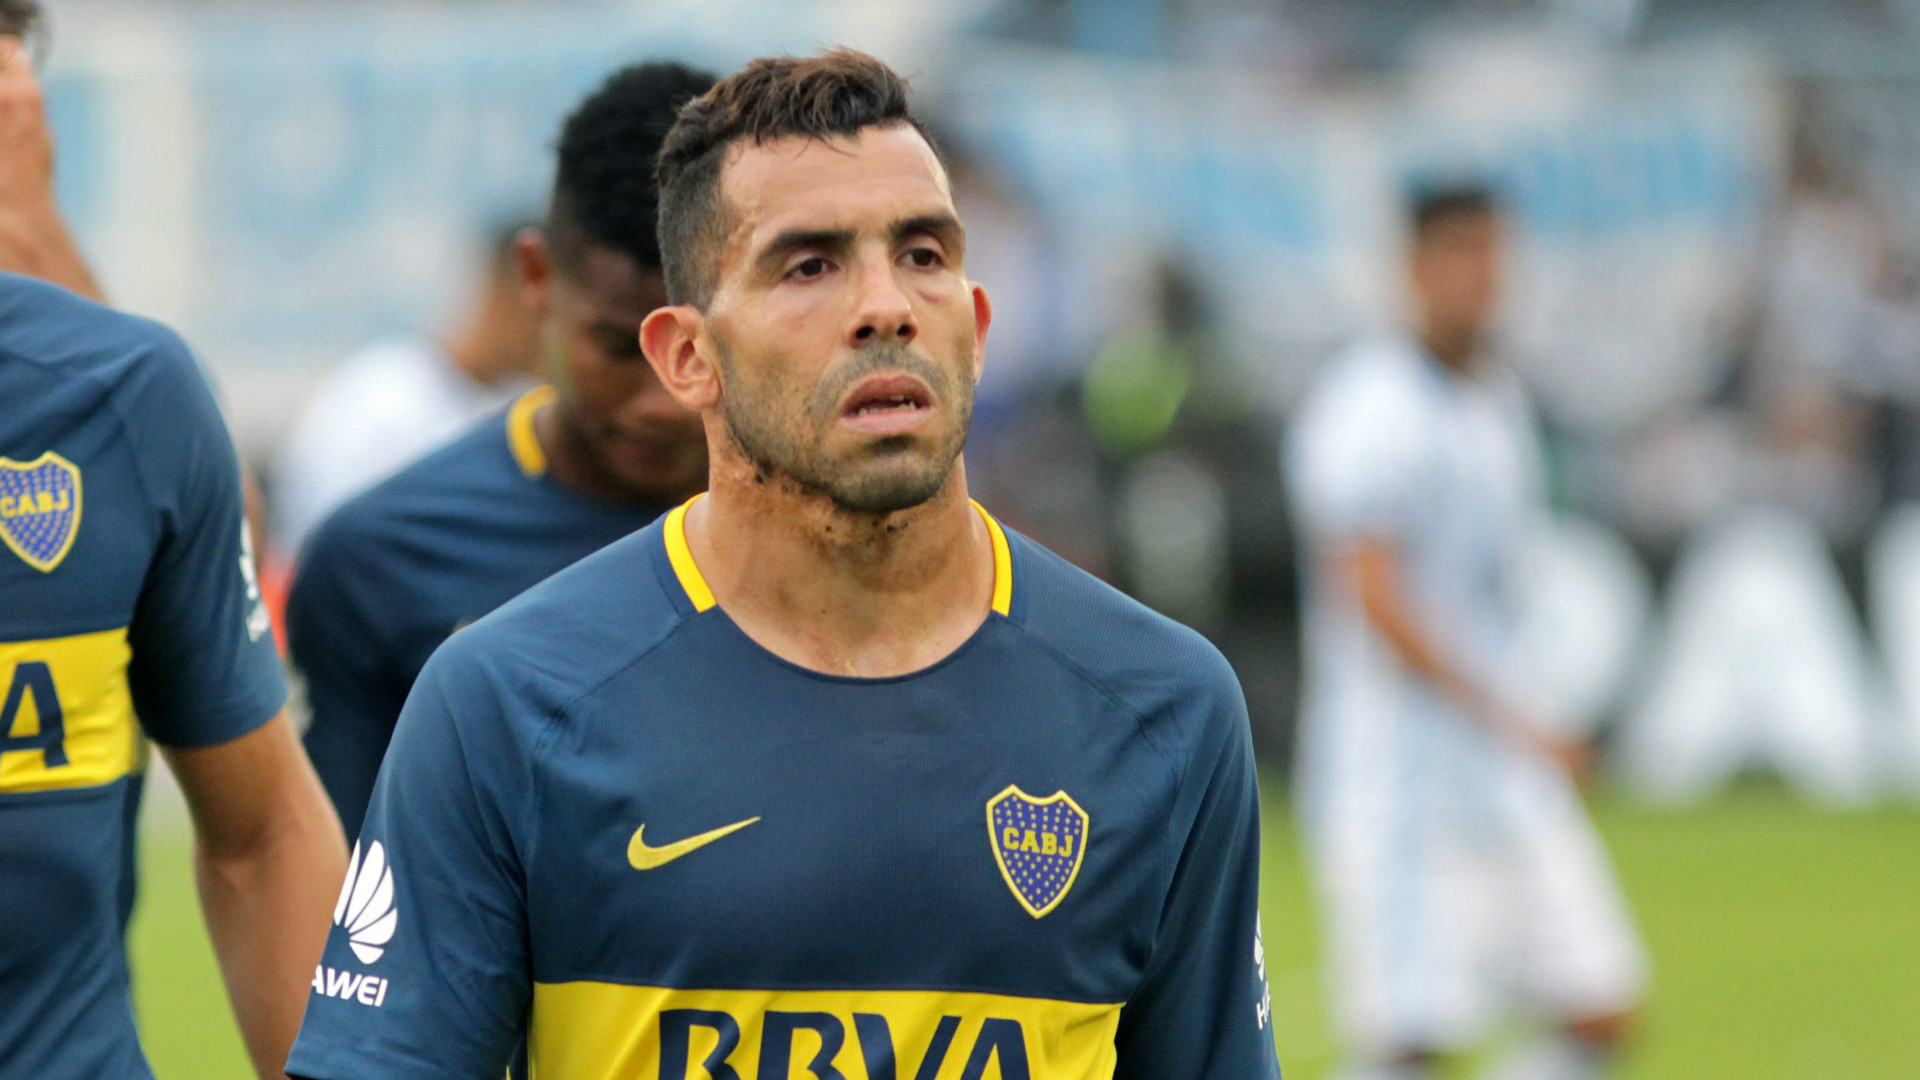 Après le décès de son père, Carlos Tevez évoque son avenir dans le foot